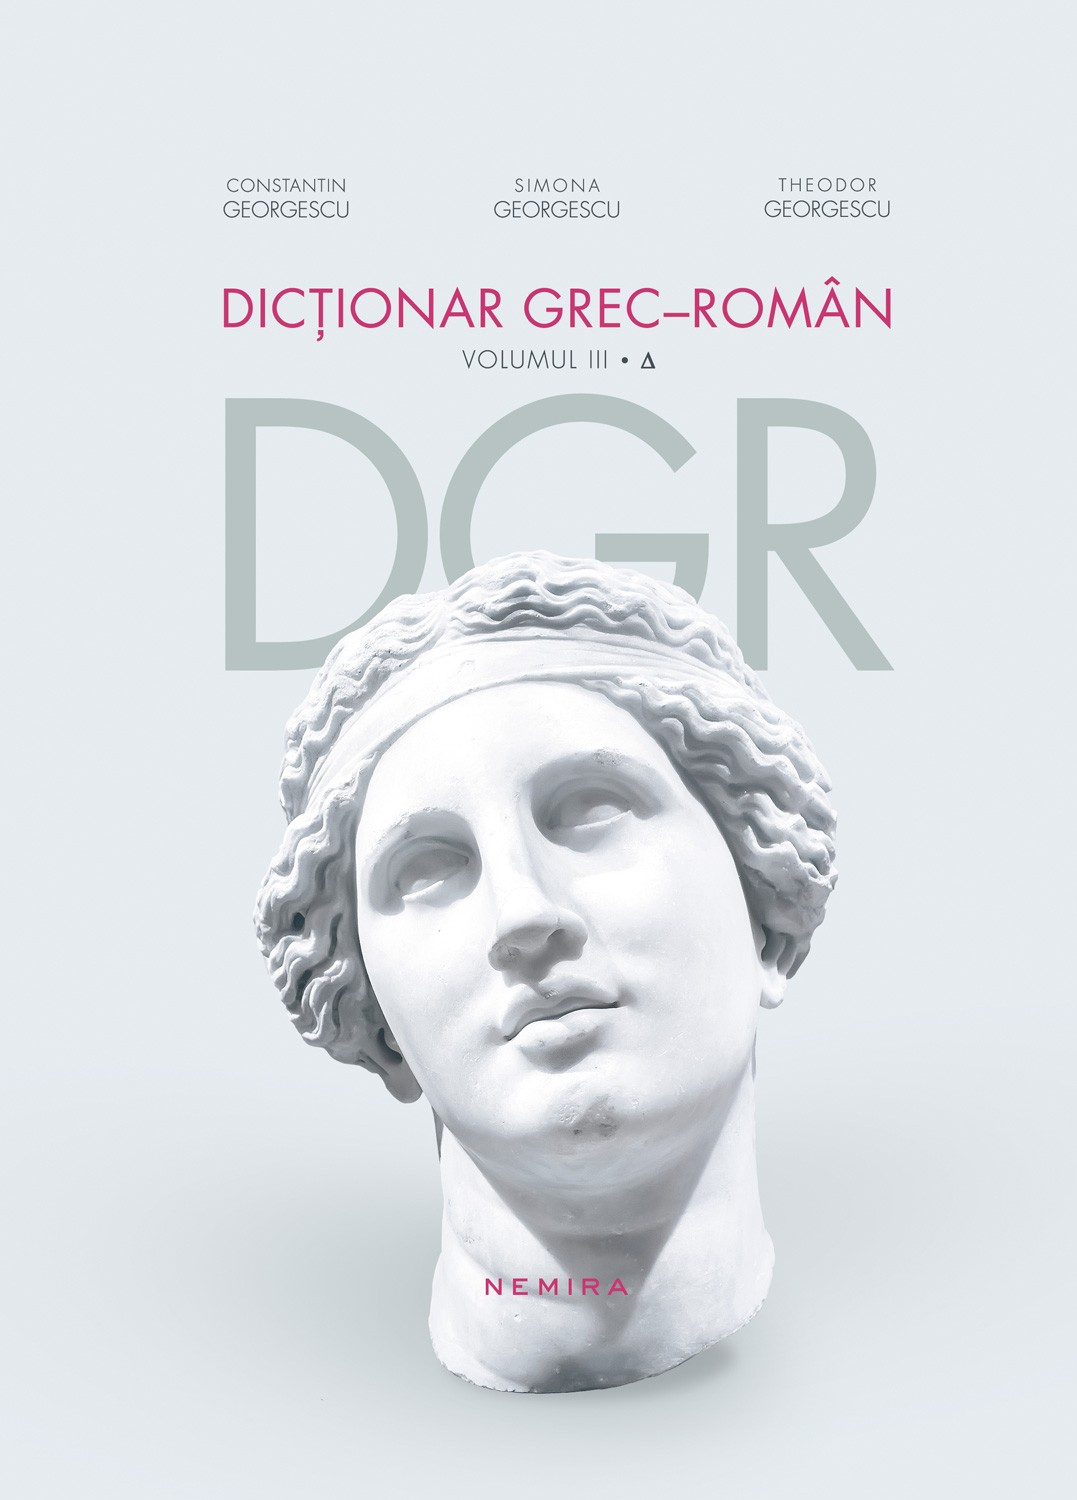 Dictionar grec-roman. Volumul III | Constantin Georgescu, Simona Georgescu, Theodor Georgescu